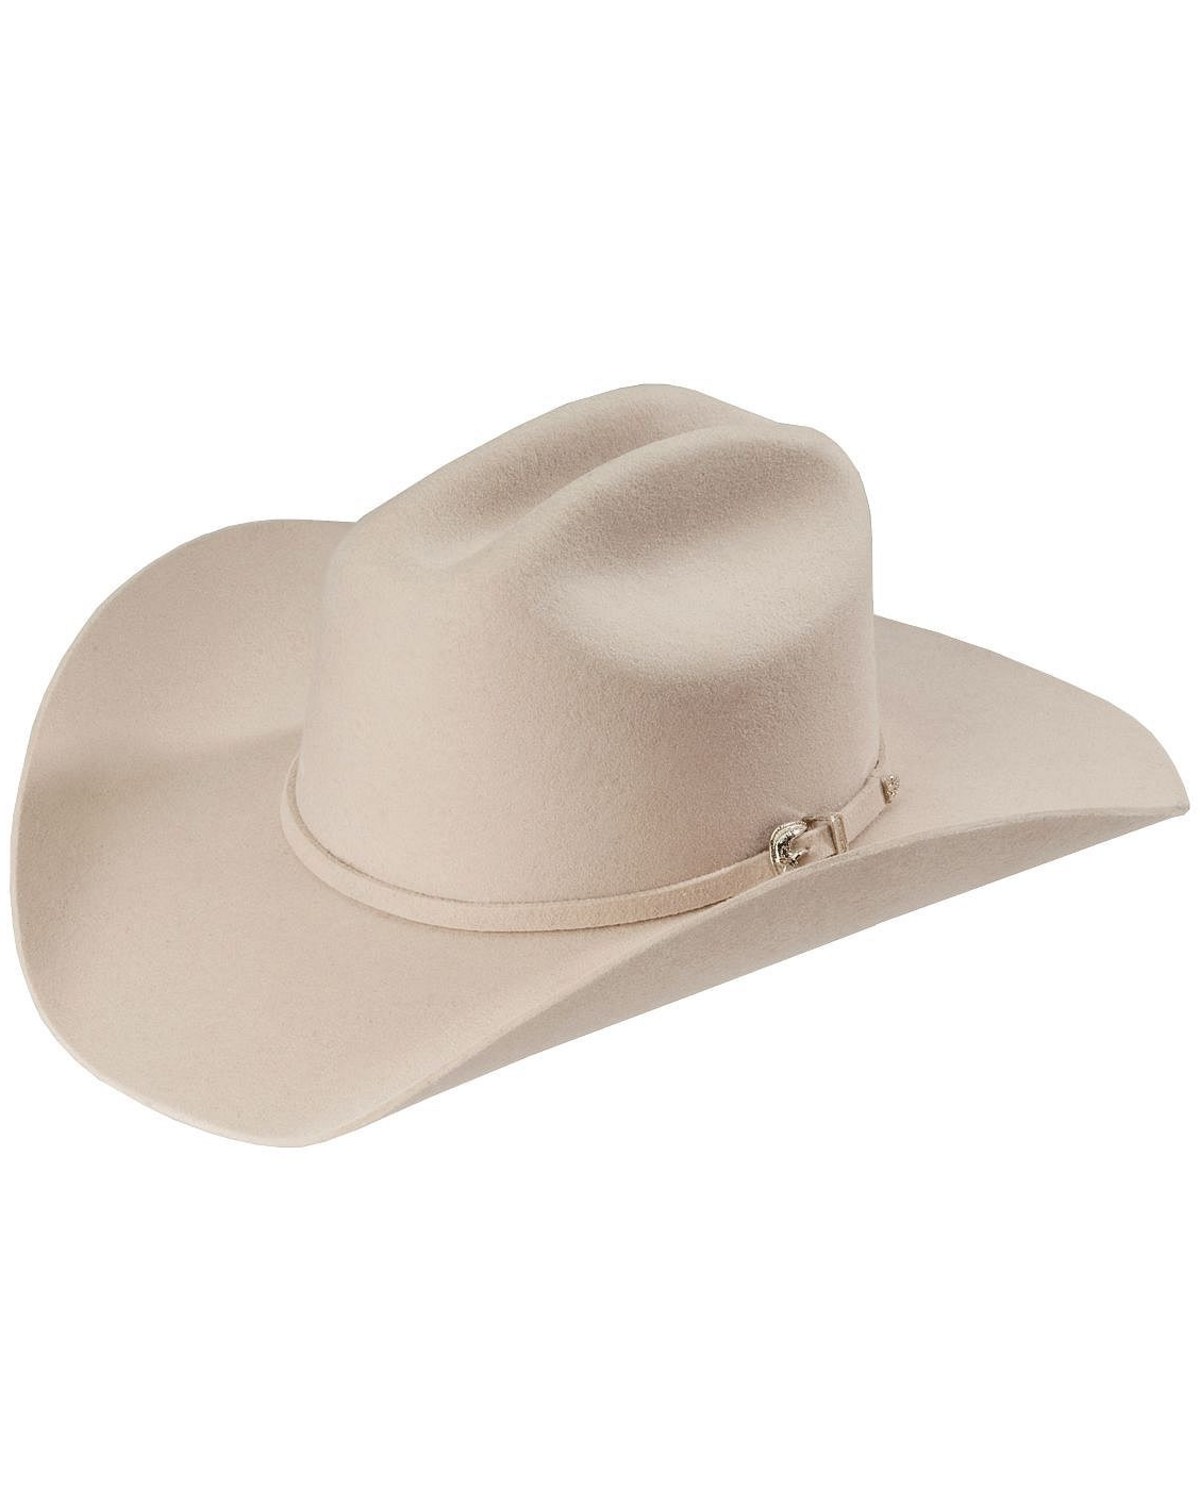 Justin Jf0242bkhl Mens 2x Hills Cattleman Felt Hat Black J C Western Wear